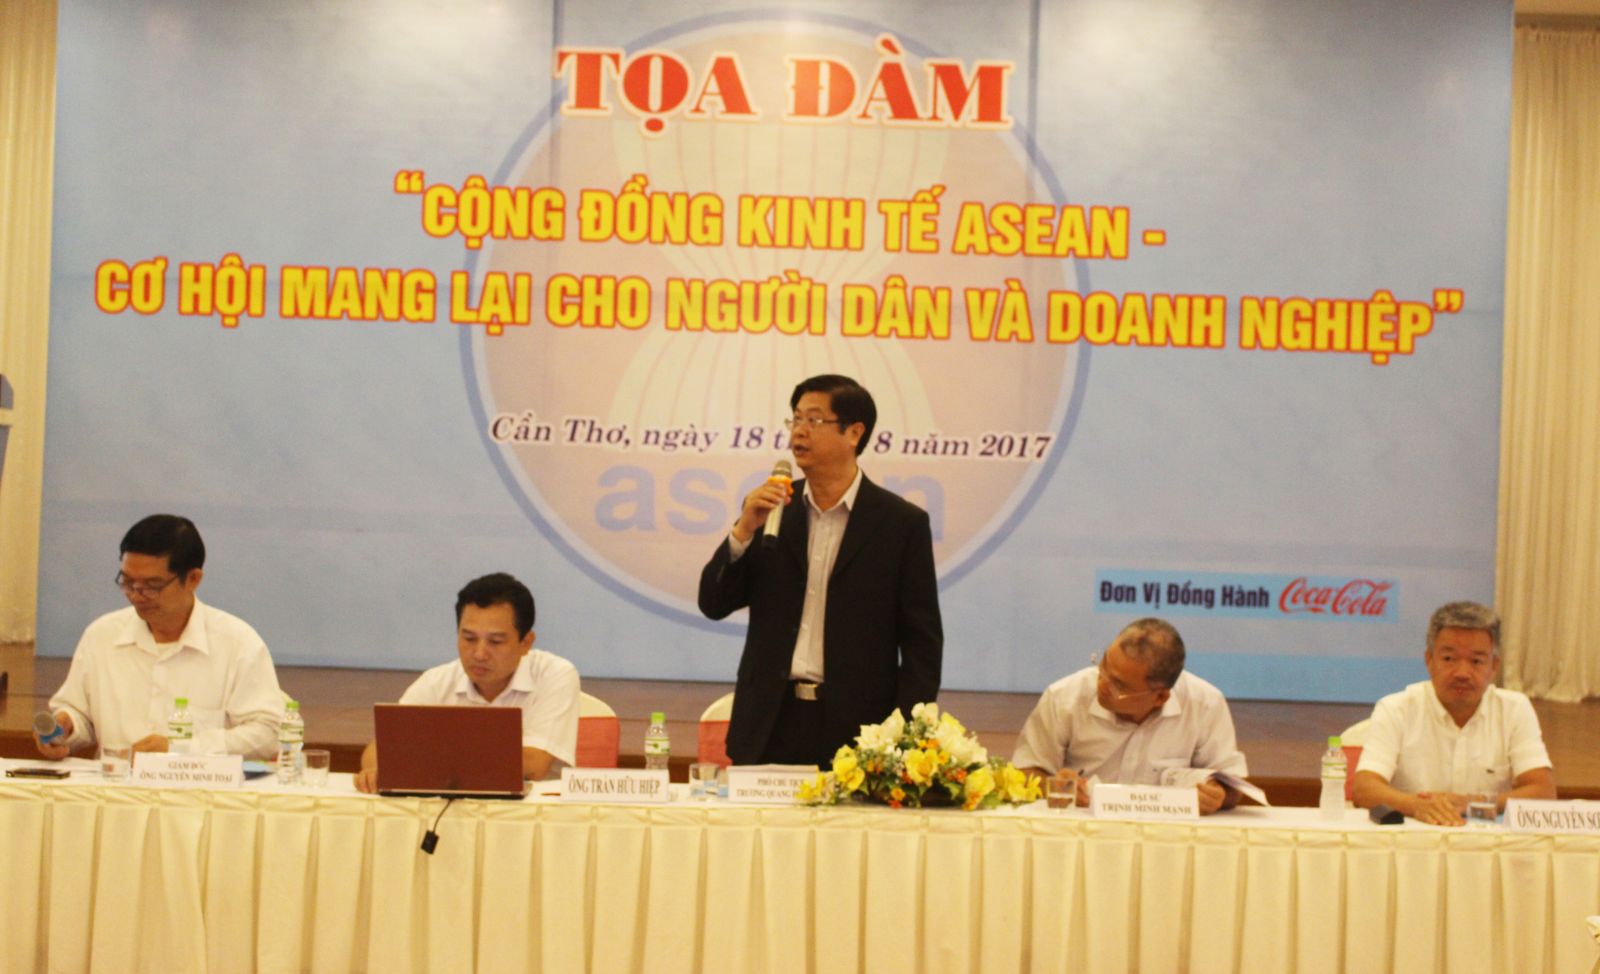 Phó Chủ tịch Trương Quang Hoài Nam phát biểu tại tọa đàm. Ảnh: Thu Hà